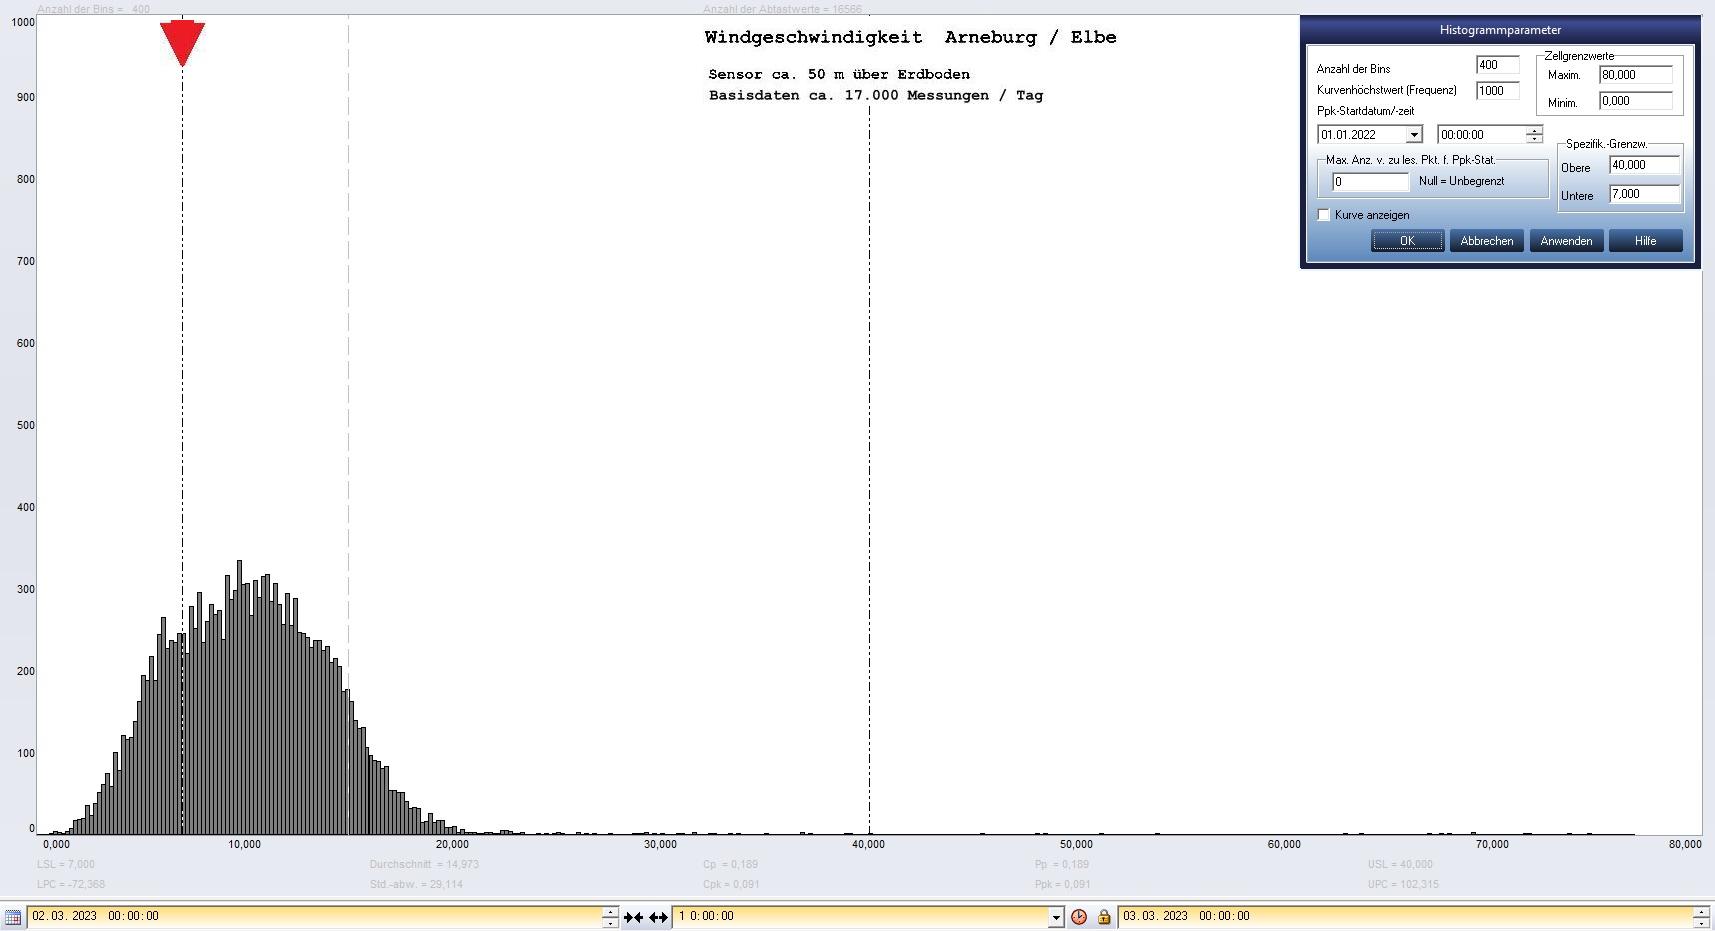 Arneburg Tages-Histogramm Winddaten, 02.03.2023
  Diagramm, Sensor auf Gebude, ca. 50 m ber Erdboden, Basis: 5s-Aufzeichnung